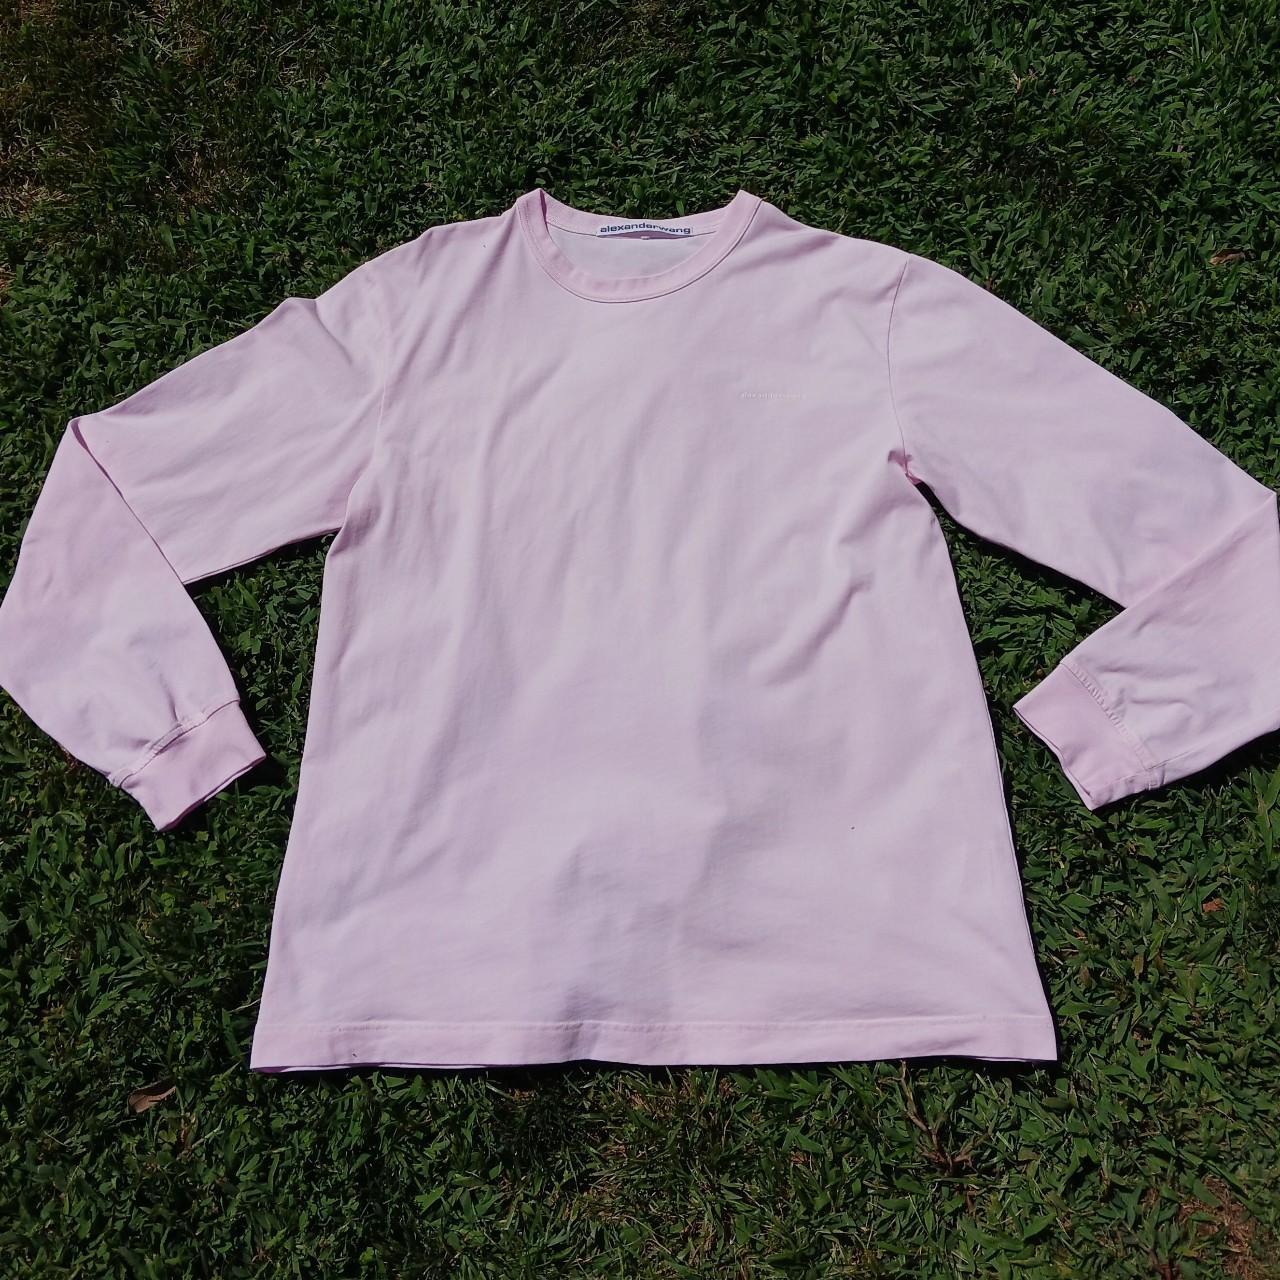 Alexander Wang Men's Pink T-shirt